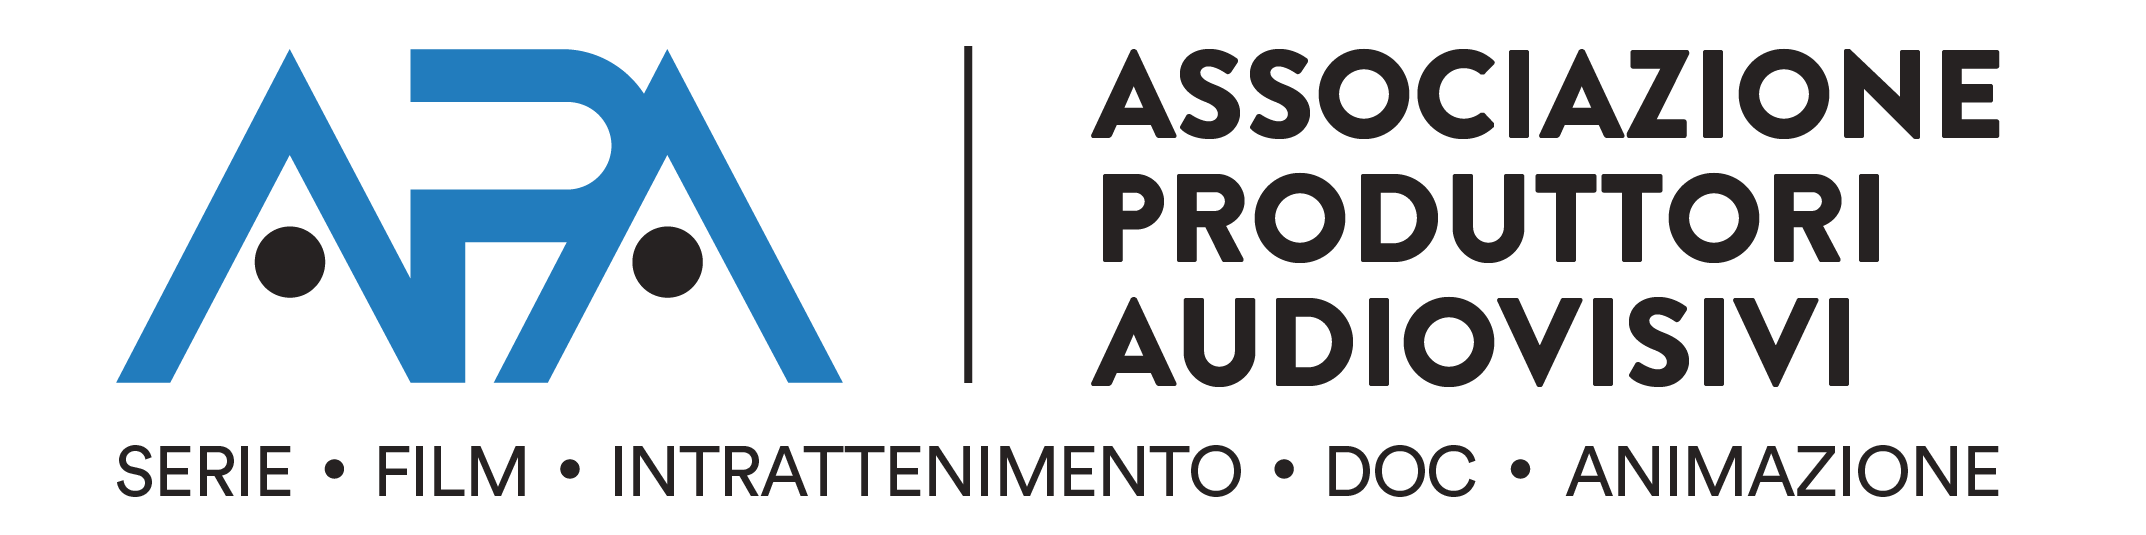 logo apa - associazione produttori audiovisivi